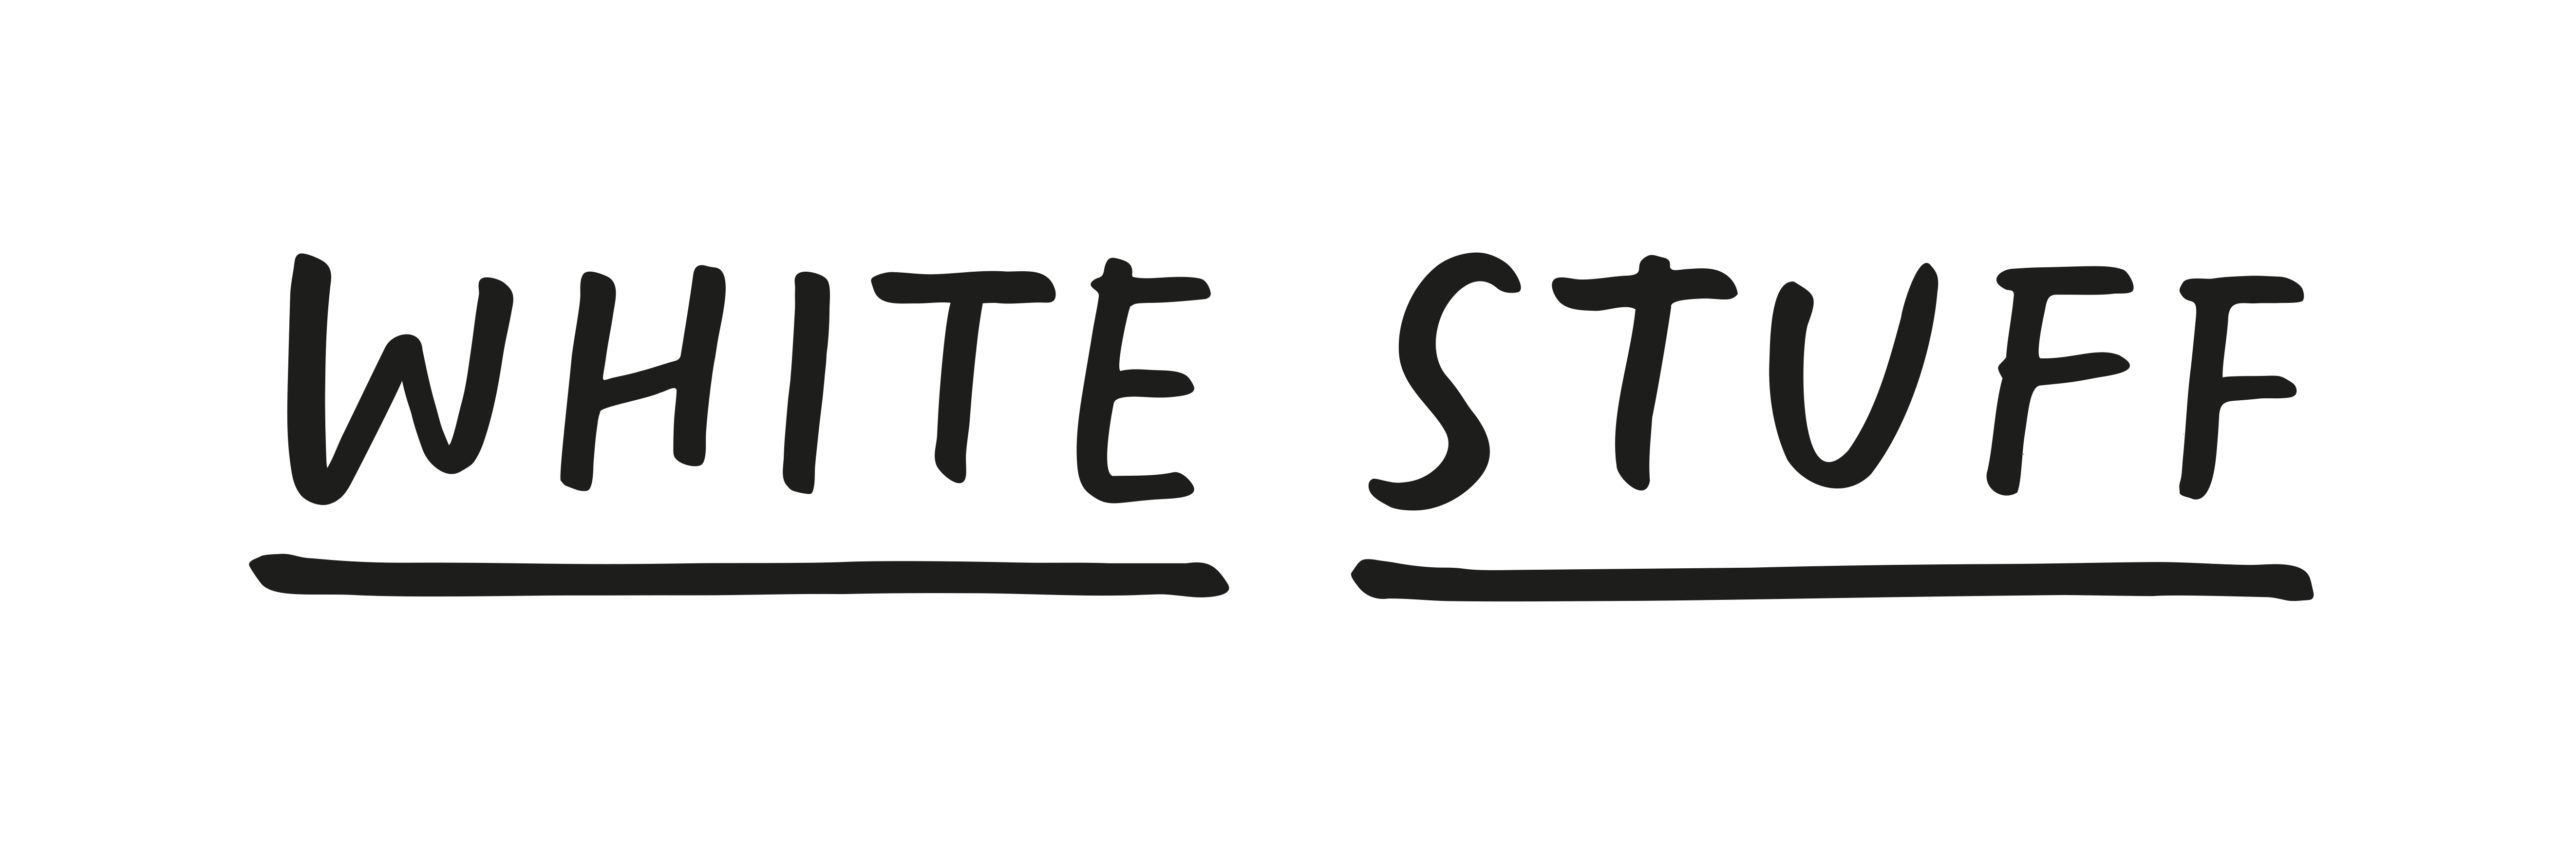 White stuff logo